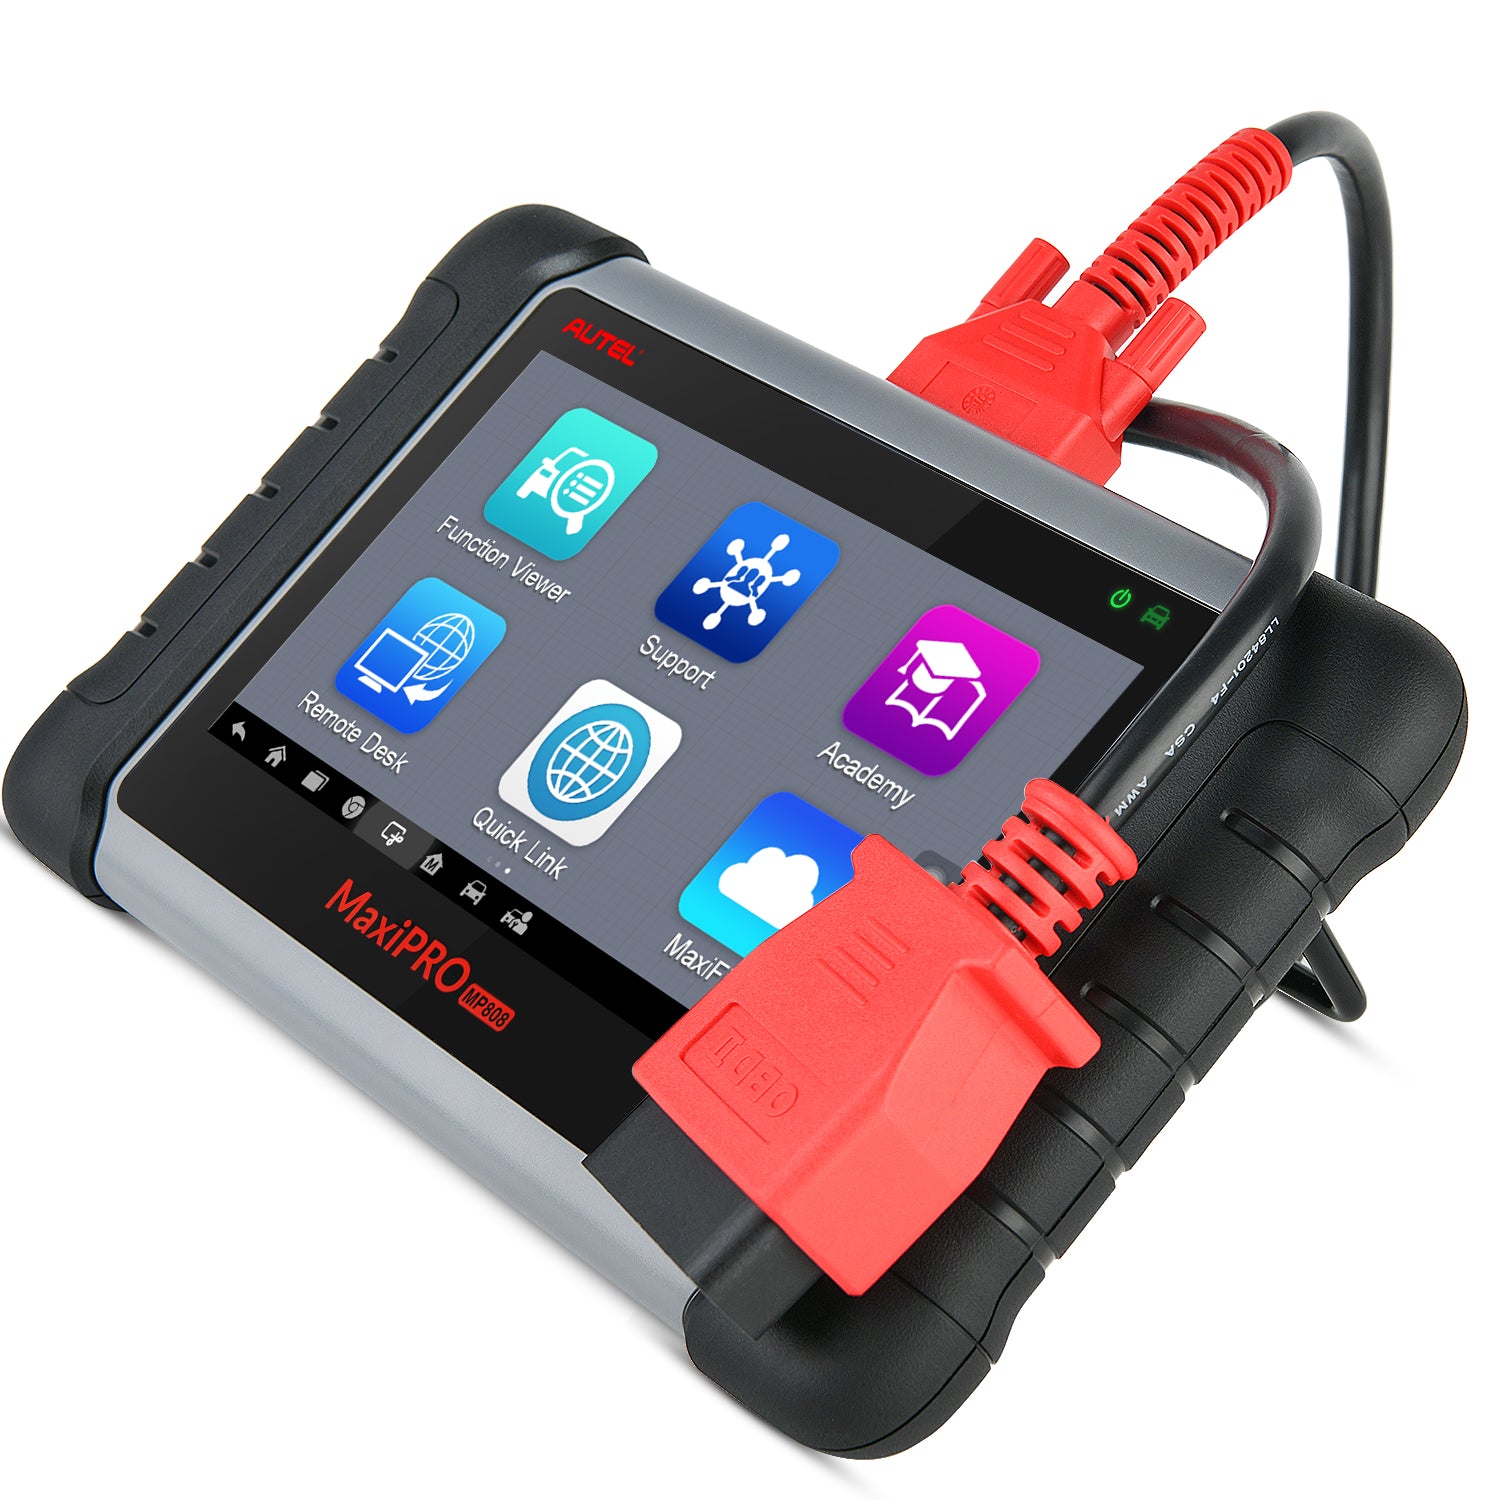 Autel MaxiPRO MP808S Kit OBD2 Automotive Diagnostic Scanner - Buy